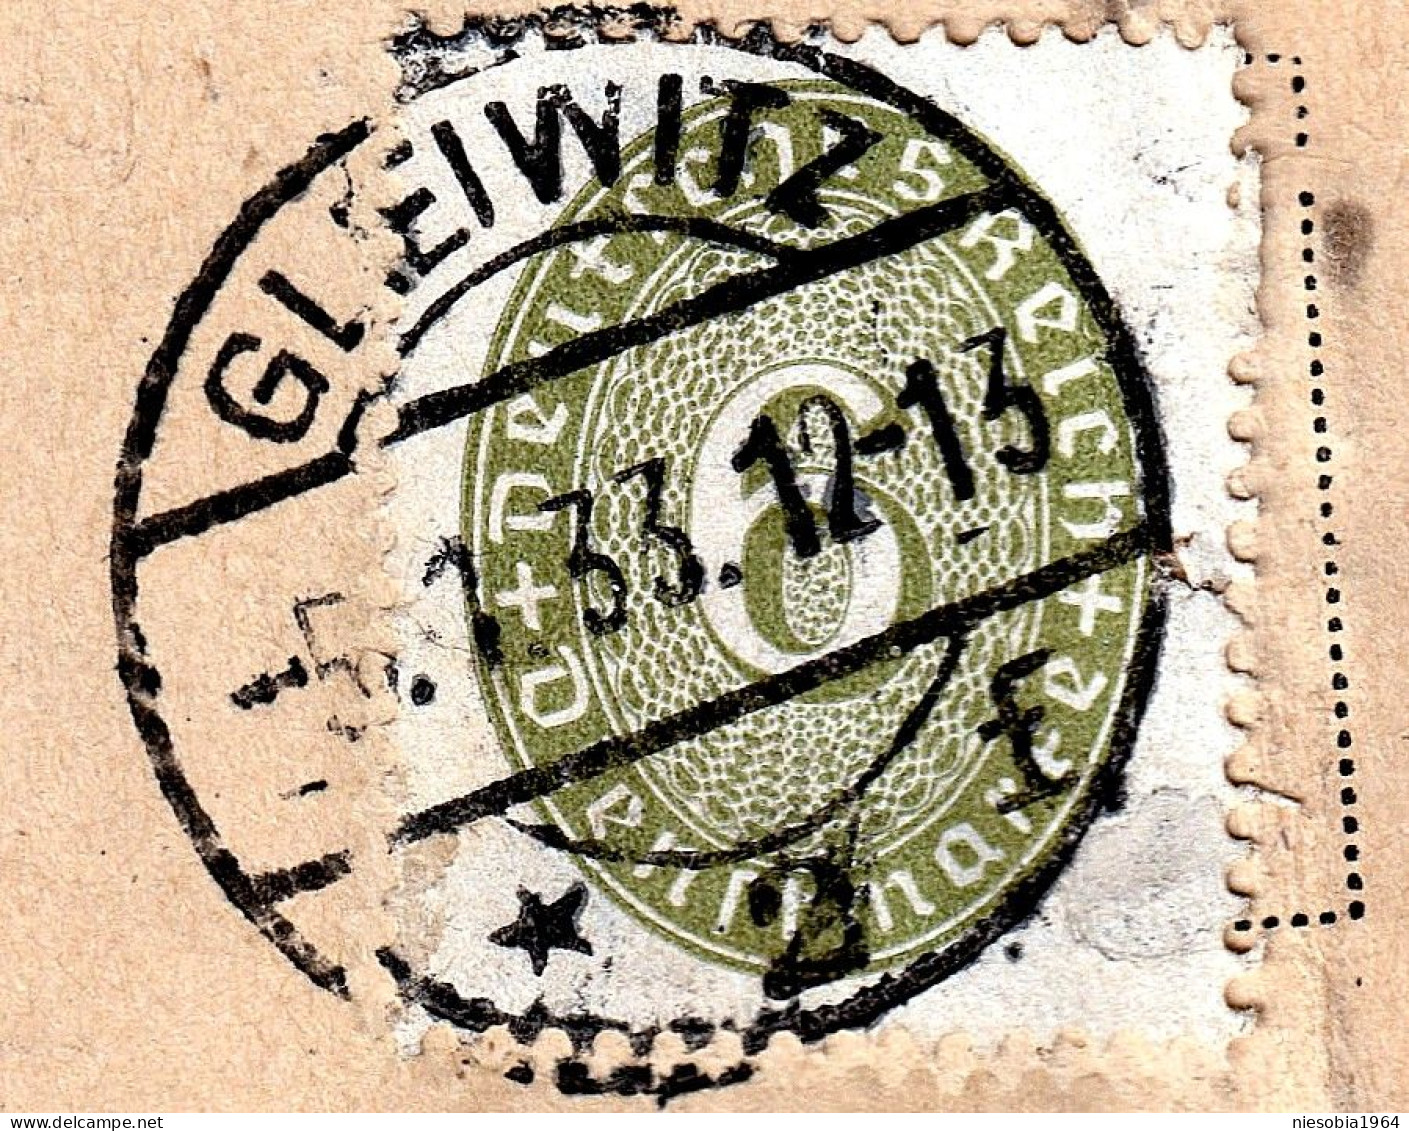 Prussian District Court Gleiwitz Special Seal GLEIWITZ June 05,1933 Postcarte Judicial Authorities - Postcards